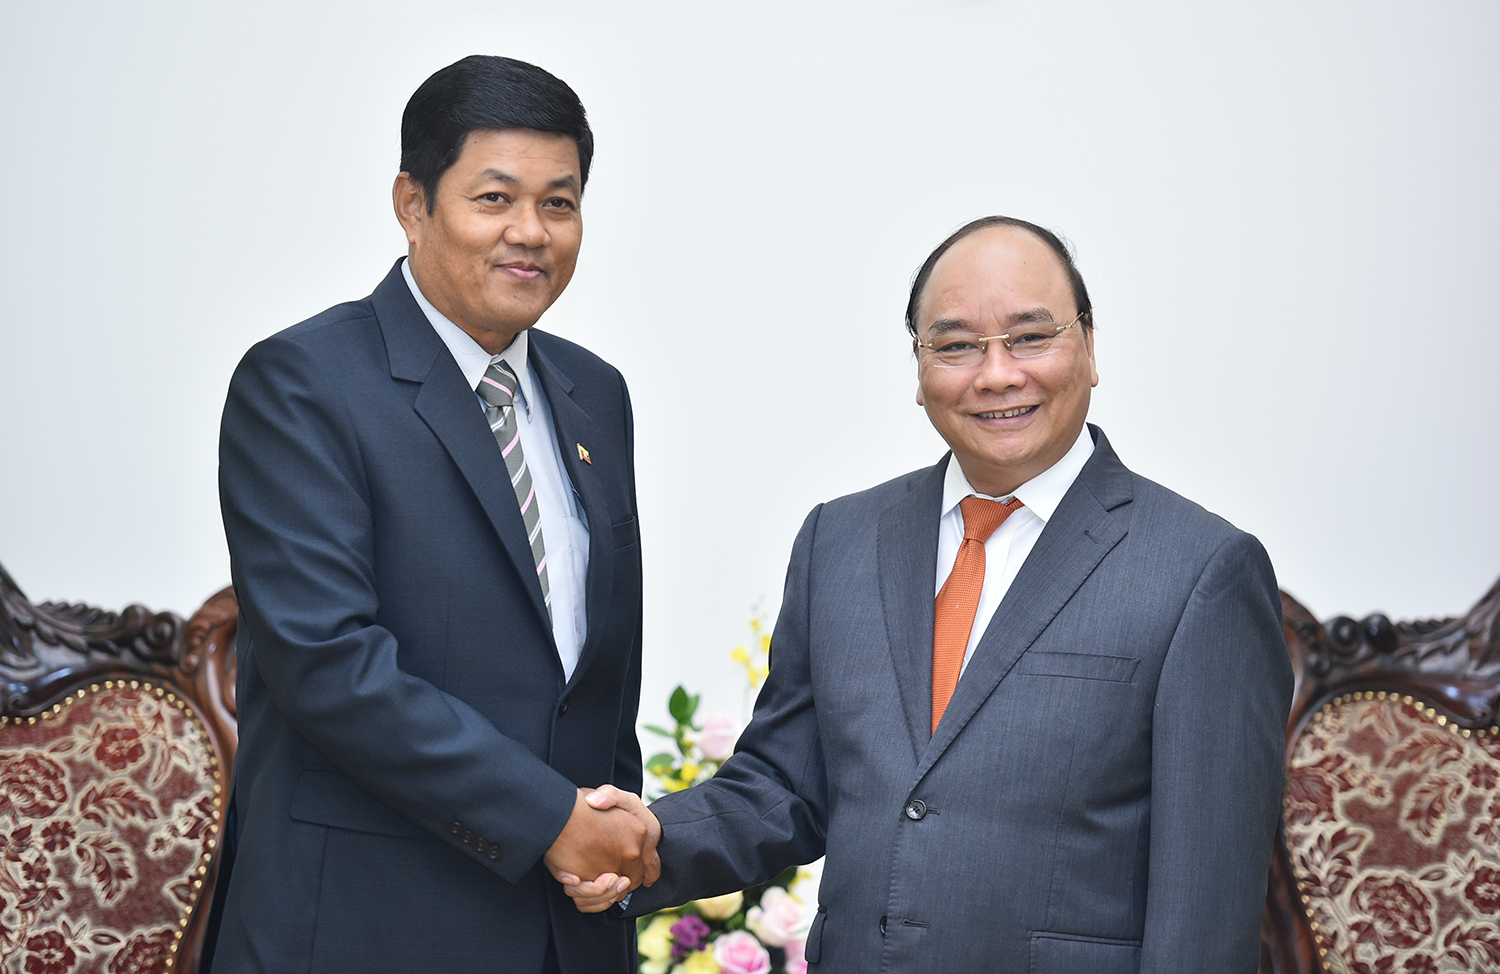  Thủ tướng Chính phủ Nguyễn Xuân Phúc và Đại sứ Myanmar Kyaw Soe Win. Ảnh: VGP